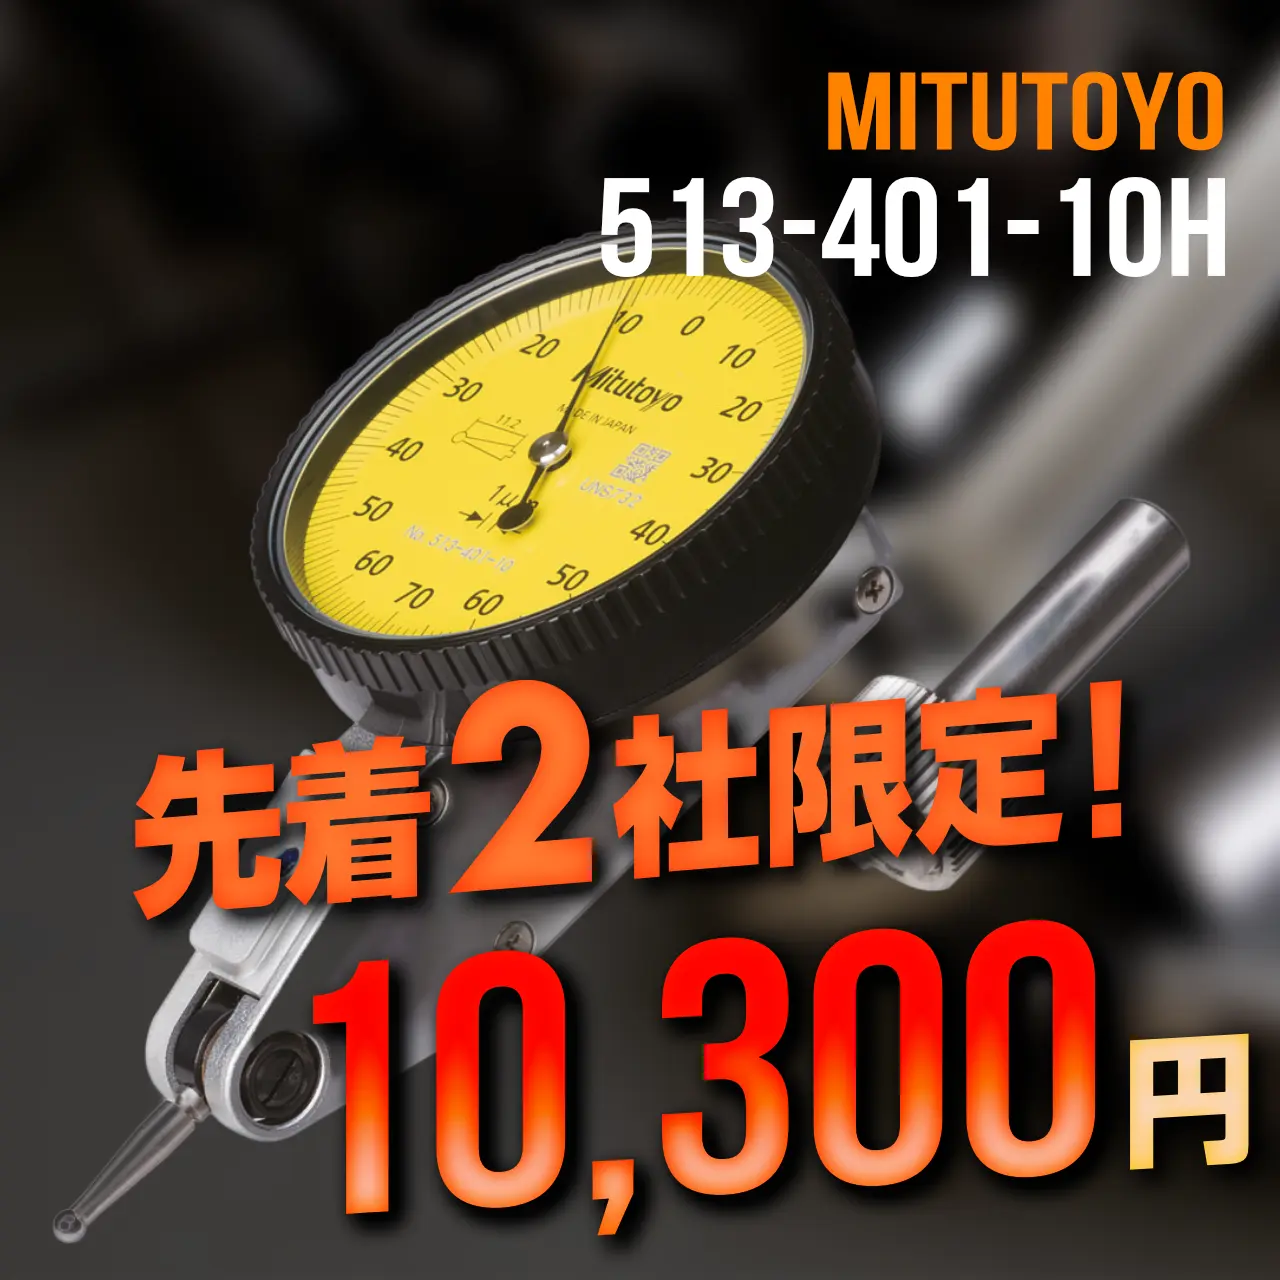 mitutoyo ミツトヨ 大特価 513-401-10H テストインジケータ 縦形・標準 高精度タイプ